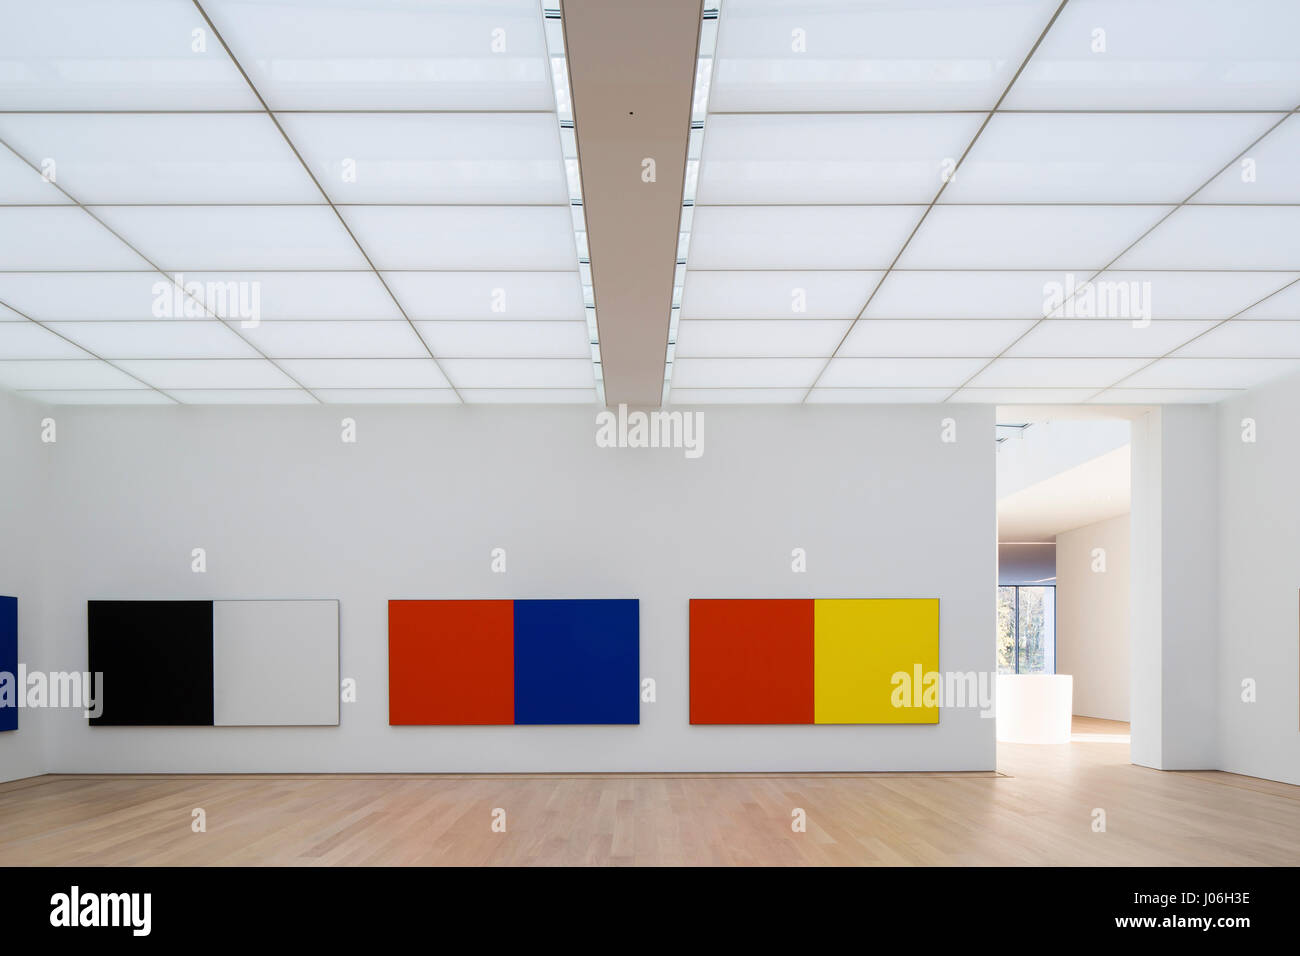 Ausstellung Räume mit Kunstwerken von Ellsworth Kelly. Museum Voorlinden, Wassenaar, Niederlande. Architekt: Kraaijvanger Architekten, 2016. Stockfoto